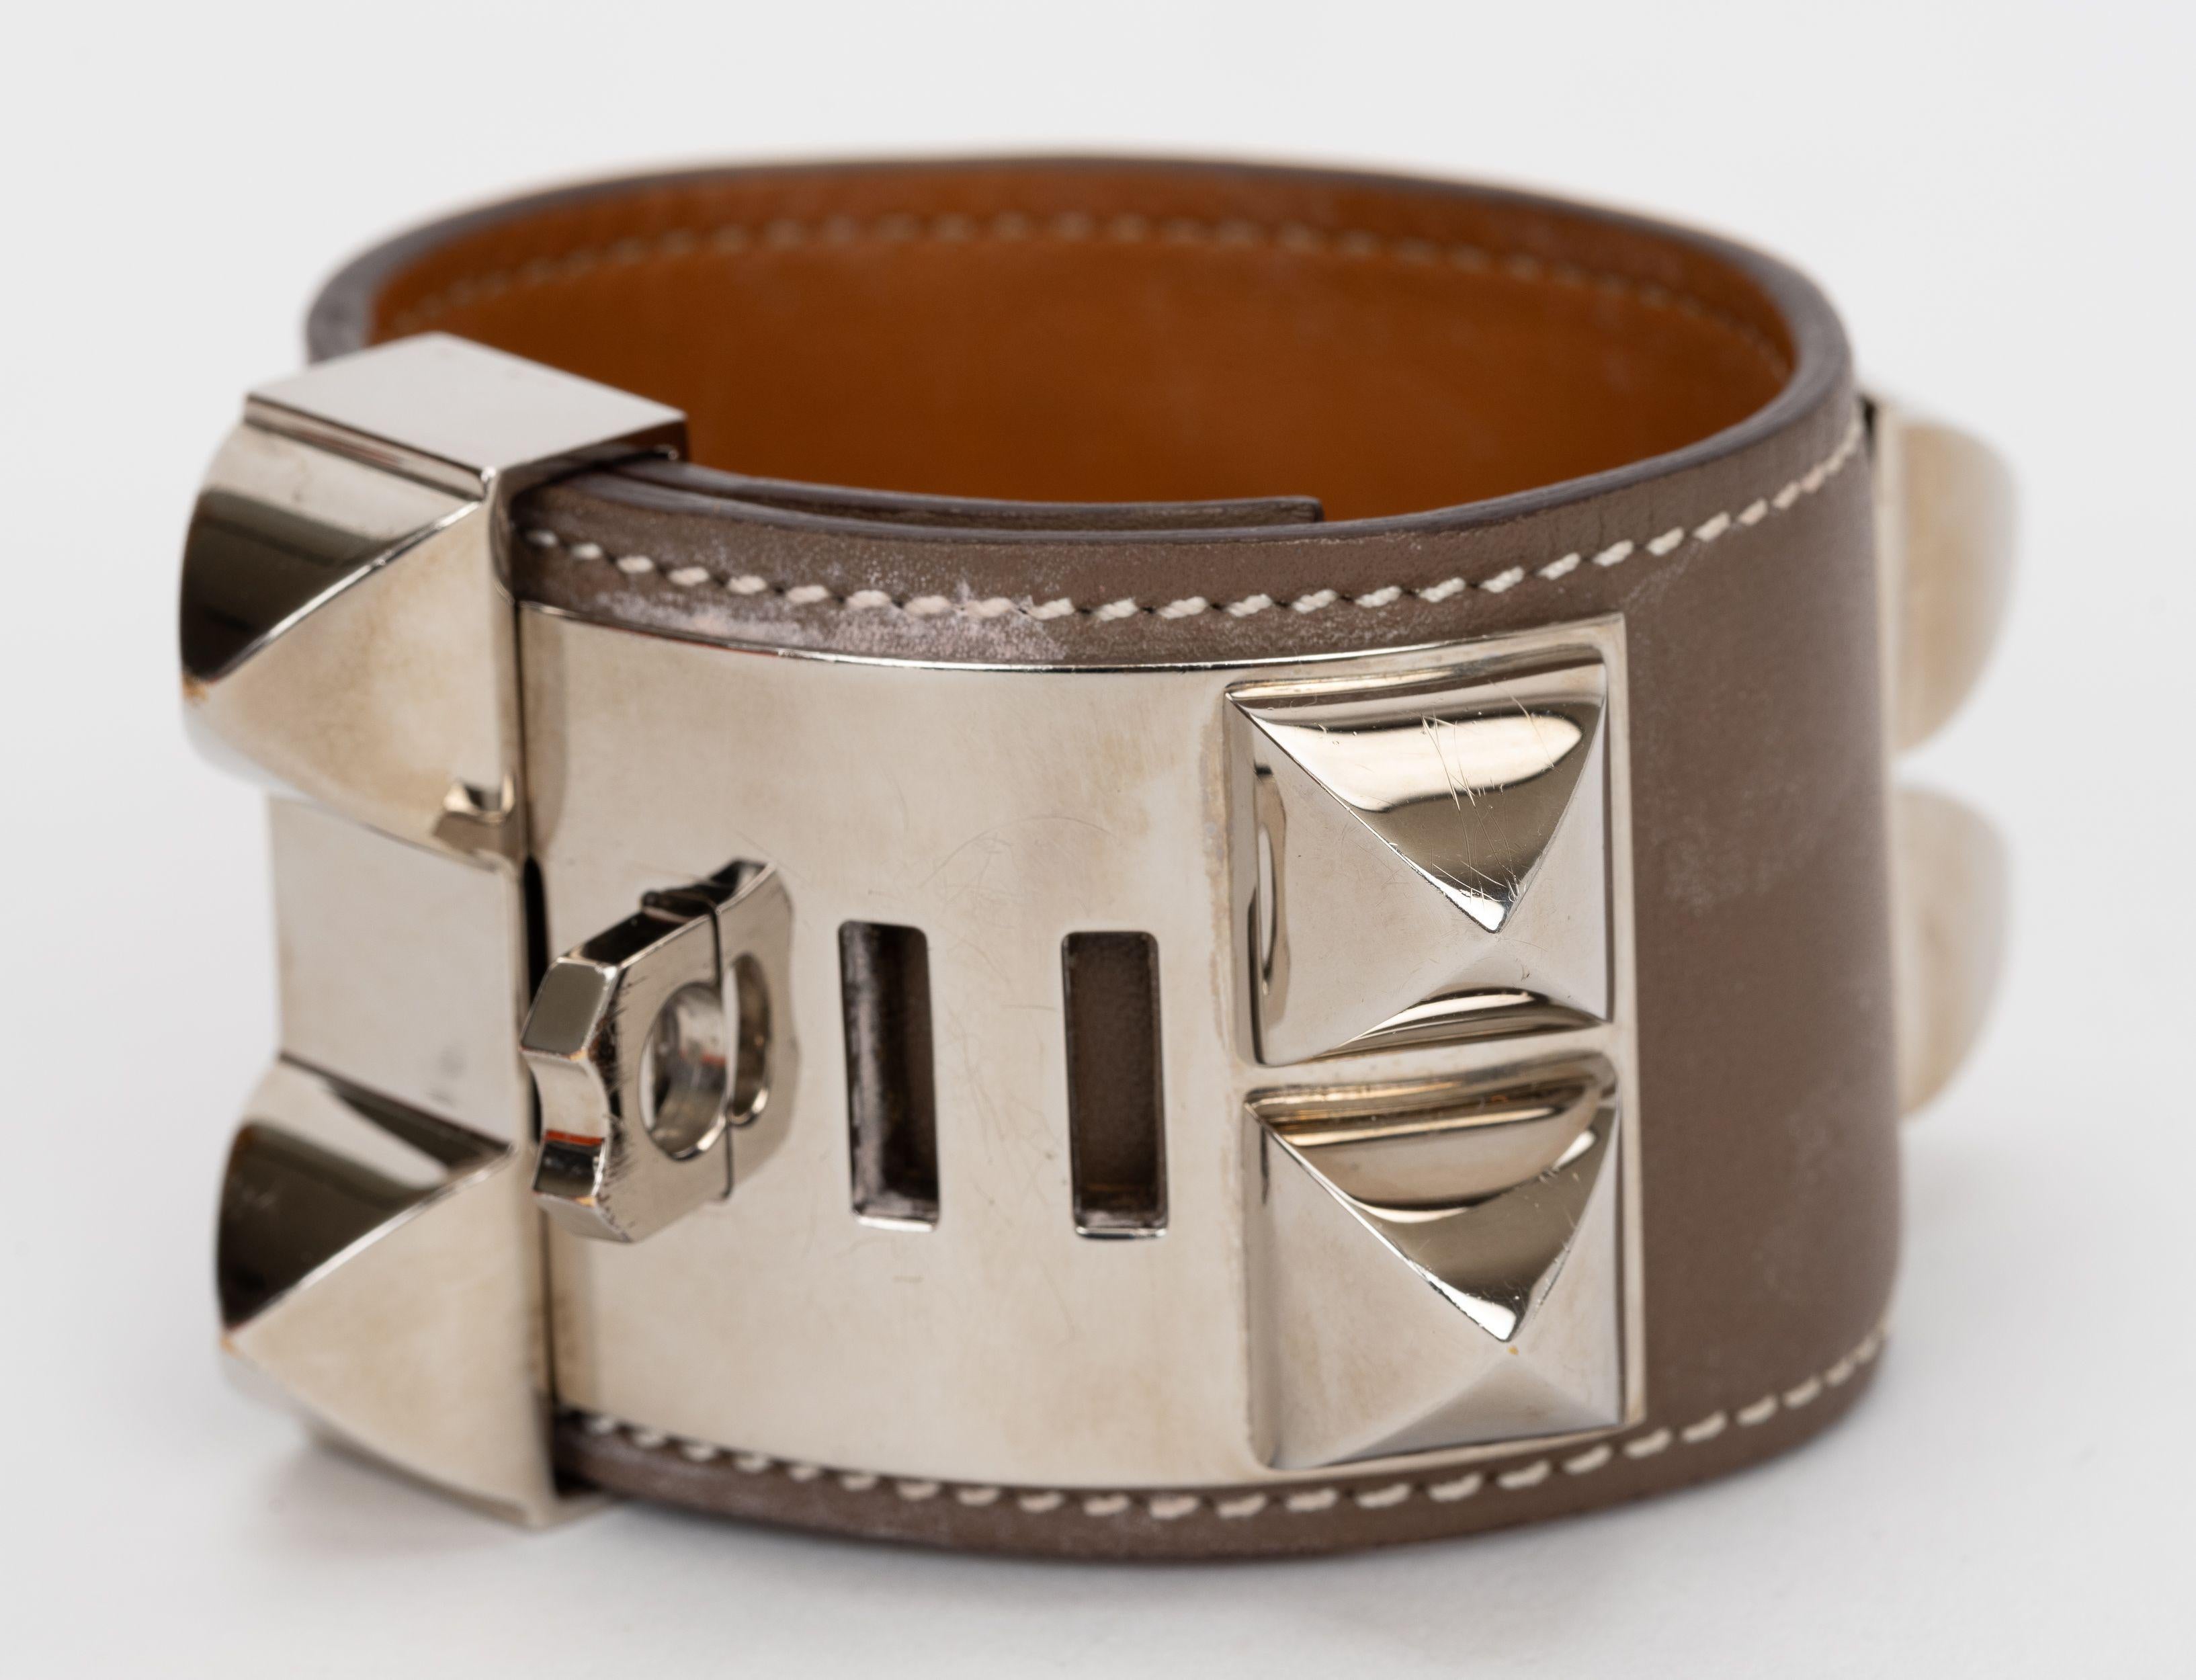 Bracelet Collier De Chien en cuir etoupe d'Hermès, orné de palladium. Cachet de la date M.
Livré avec sa pochette d'origine.